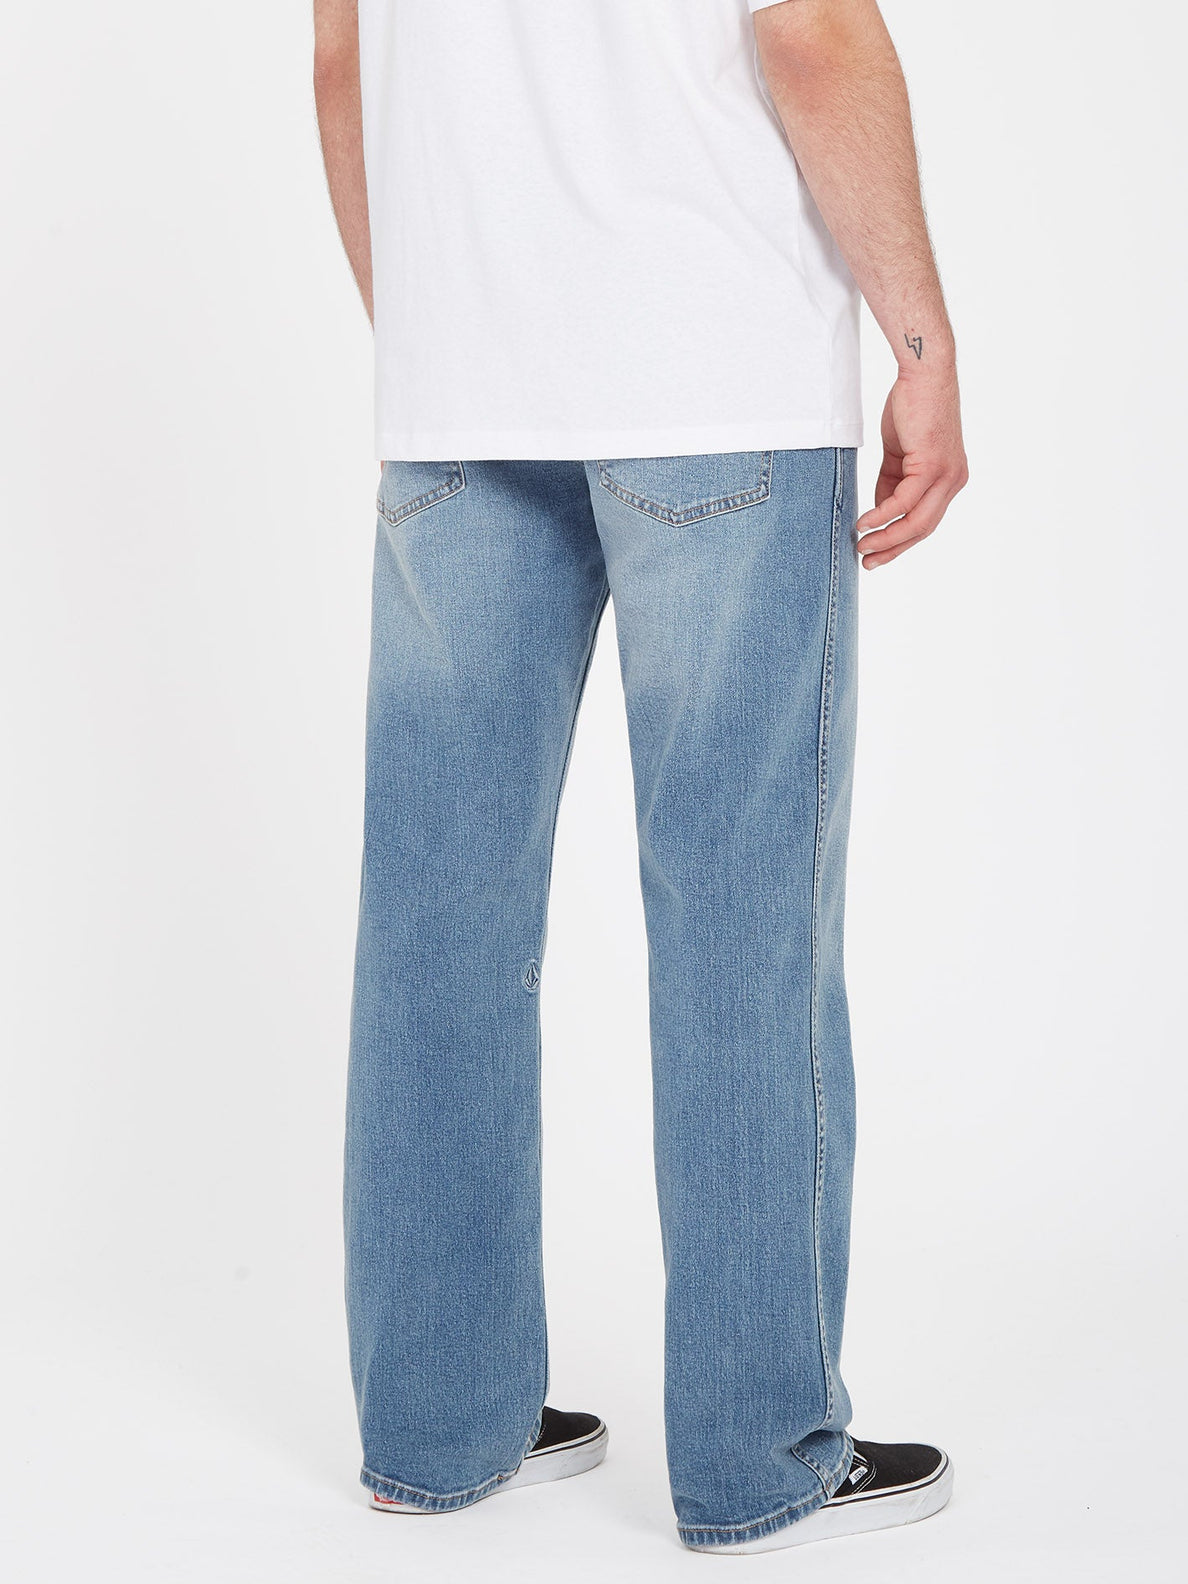 Modown Jeans - OLD TOWN INDIGO (A1931900_OTI) [B]